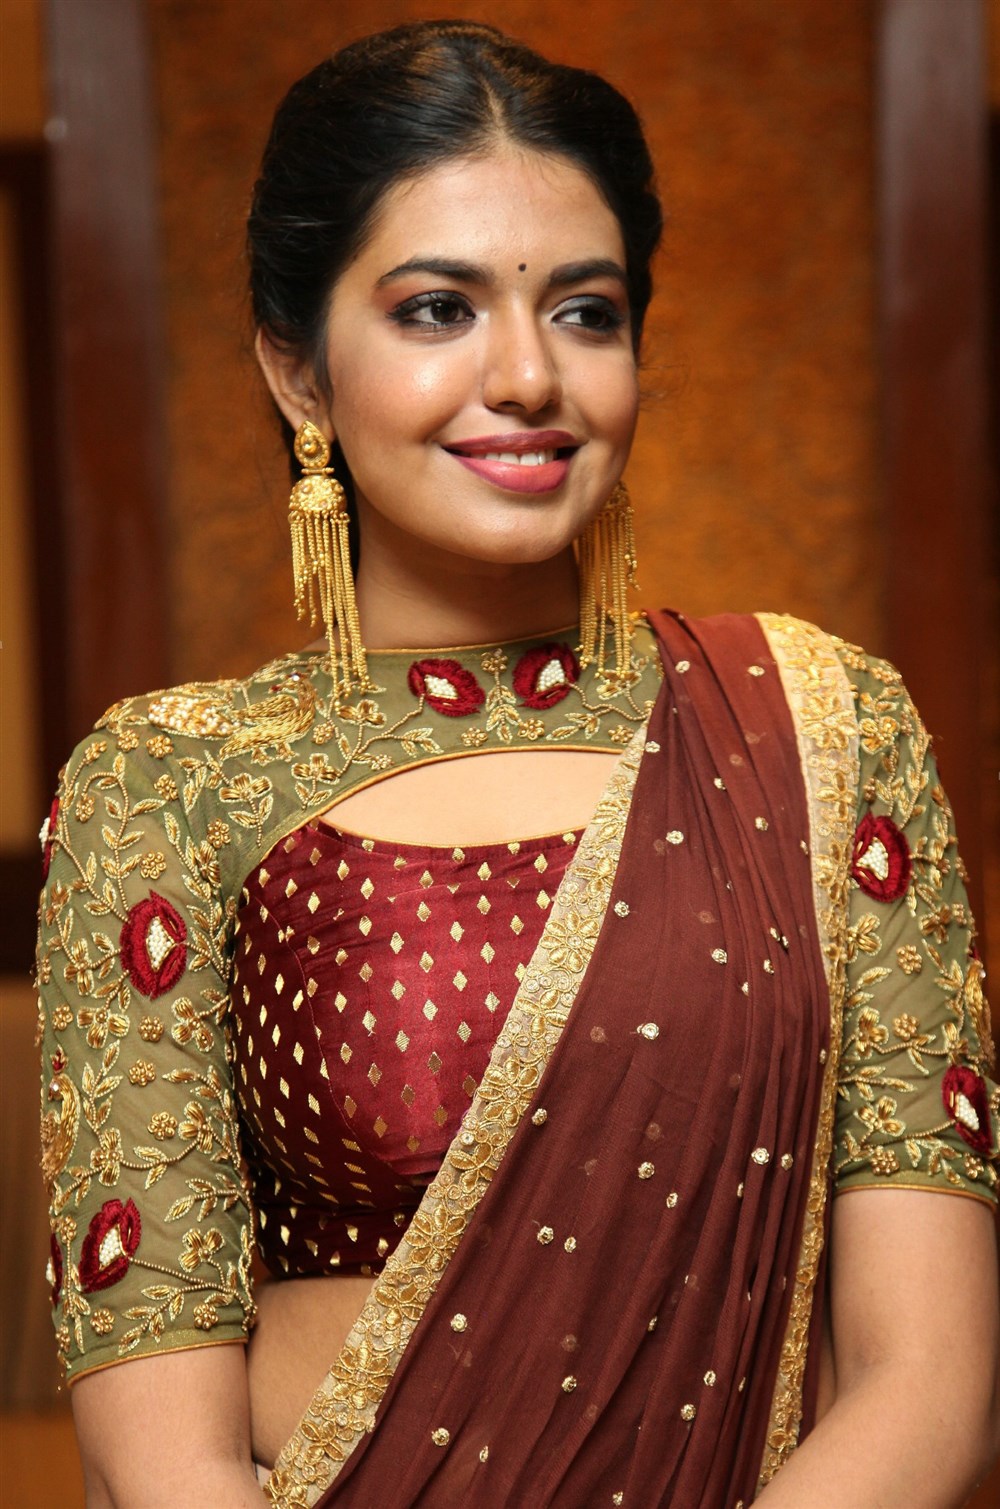 Shivani rajasekhar age